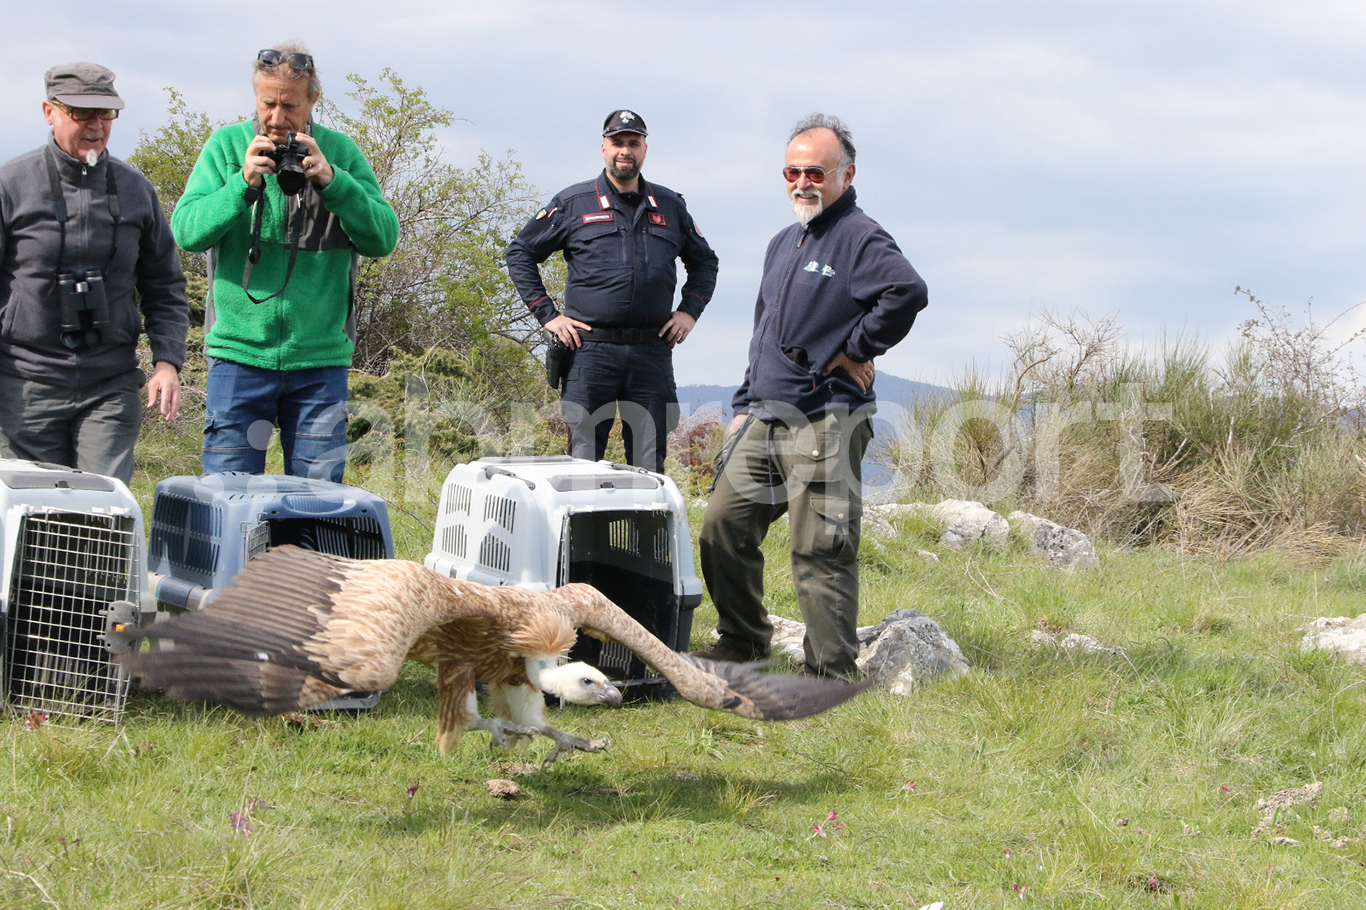 Salvati e curati, ritornano a volare i grifoni a Civita